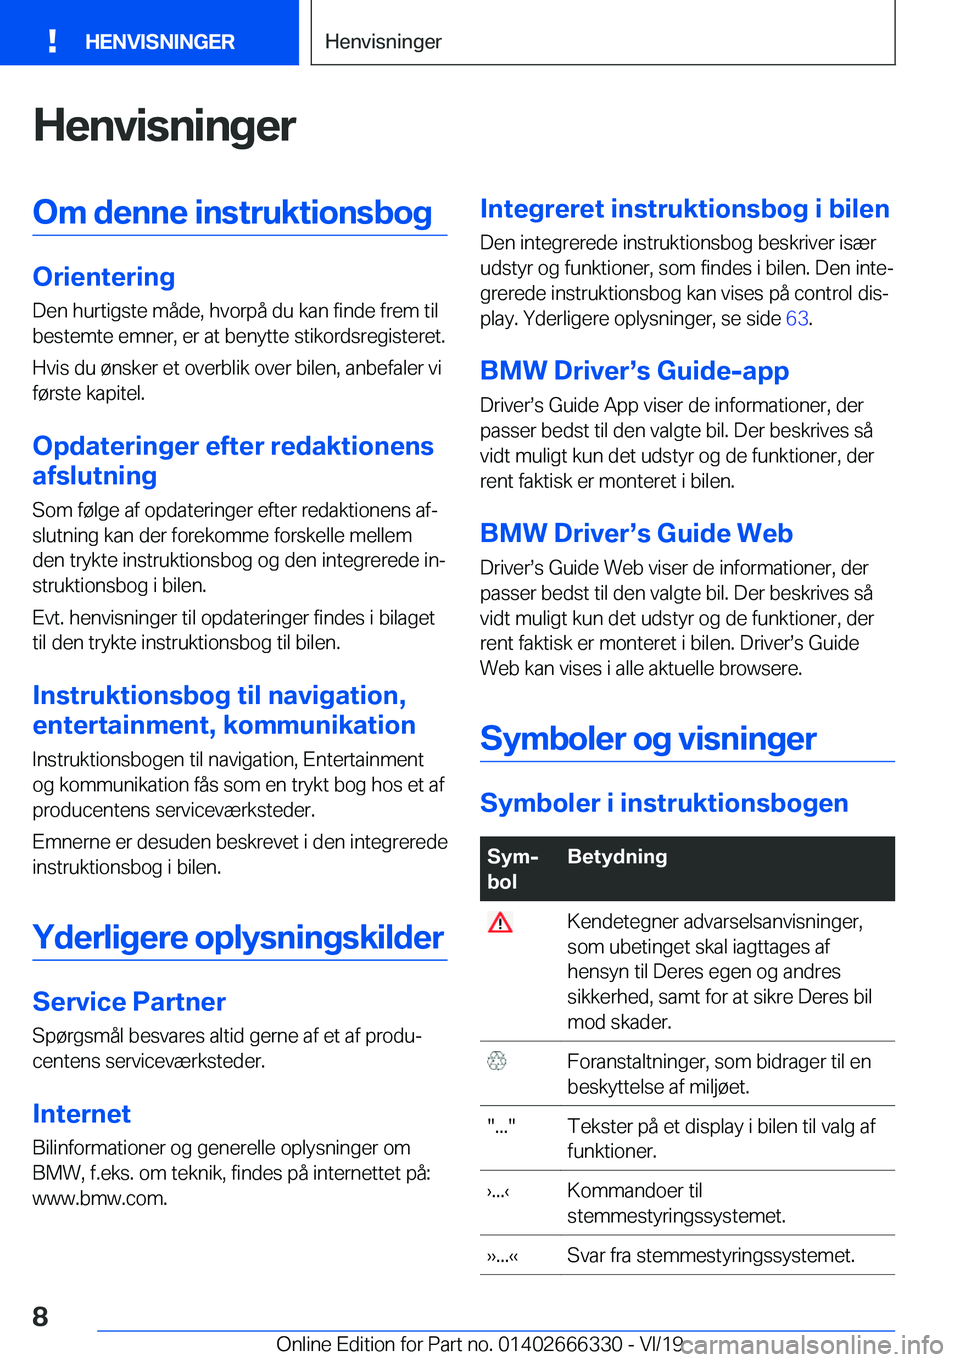 BMW 4 SERIES COUPE 2020  InstruktionsbØger (in Danish) �H�e�n�v�i�s�n�i�n�g�e�r�O�m��d�e�n�n�e��i�n�s�t�r�u�k�t�i�o�n�s�b�o�g
�O�r�i�e�n�t�e�r�i�n�g�D�e�n��h�u�r�t�i�g�s�t�e��m�å�d�e�,��h�v�o�r�p�å��d�u��k�a�n��f�i�n�d�e��f�r�e�m��t�i�l
�b�e�s